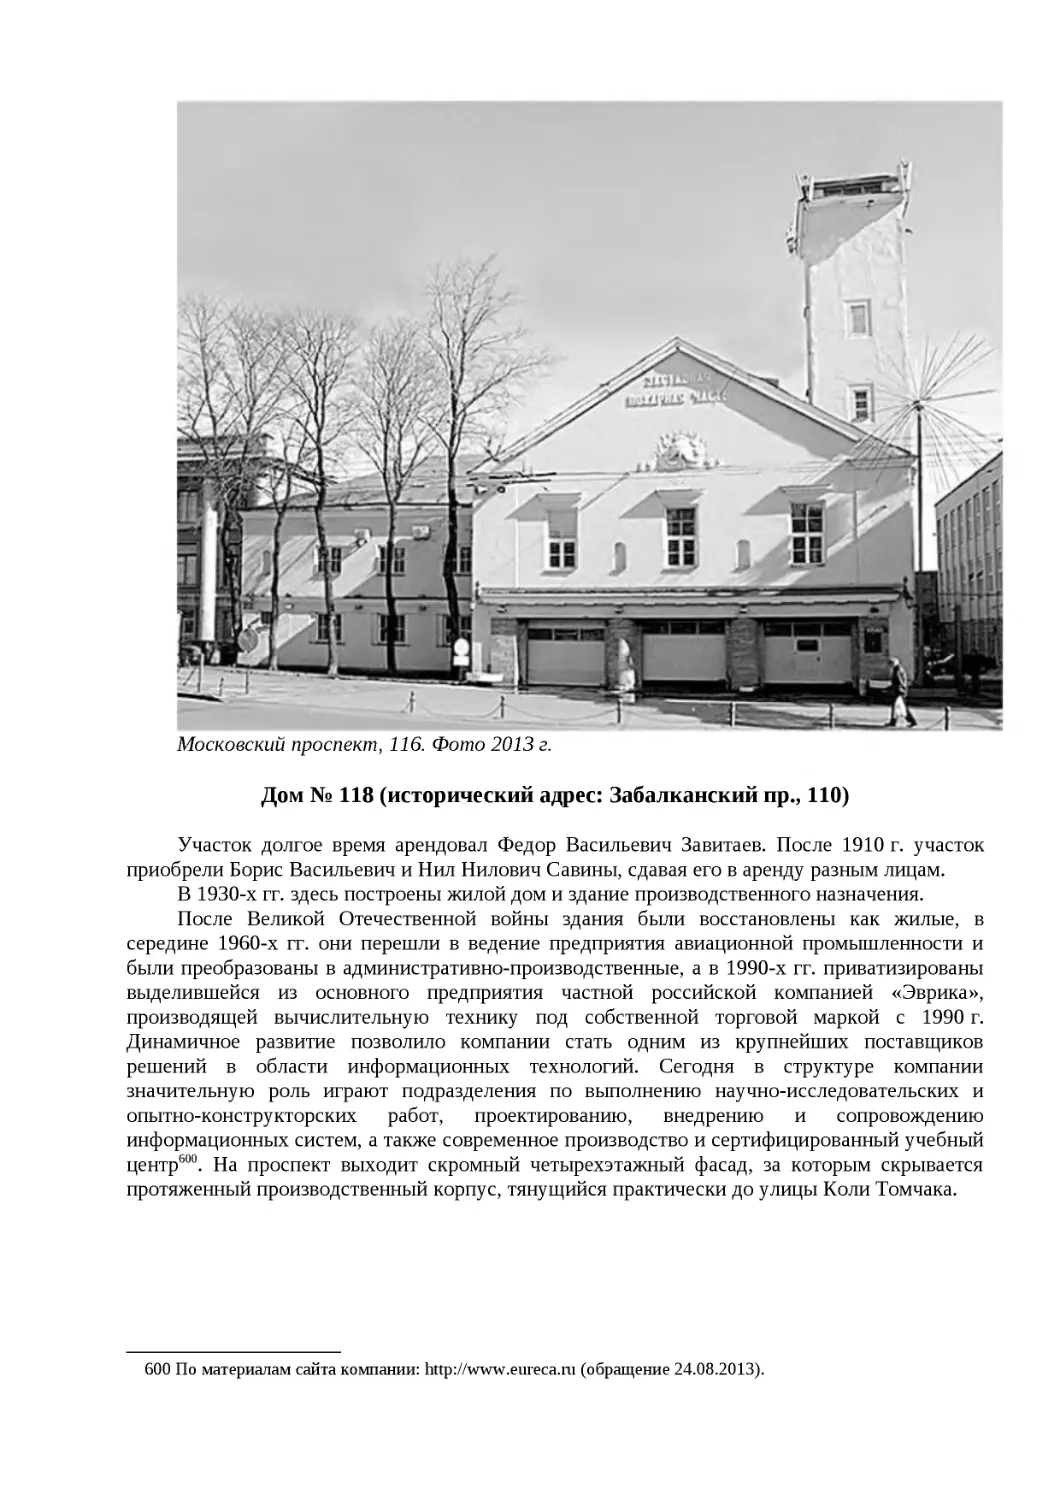 ﻿Дом № 118 øисторический адрес: Забалканский пр., 110